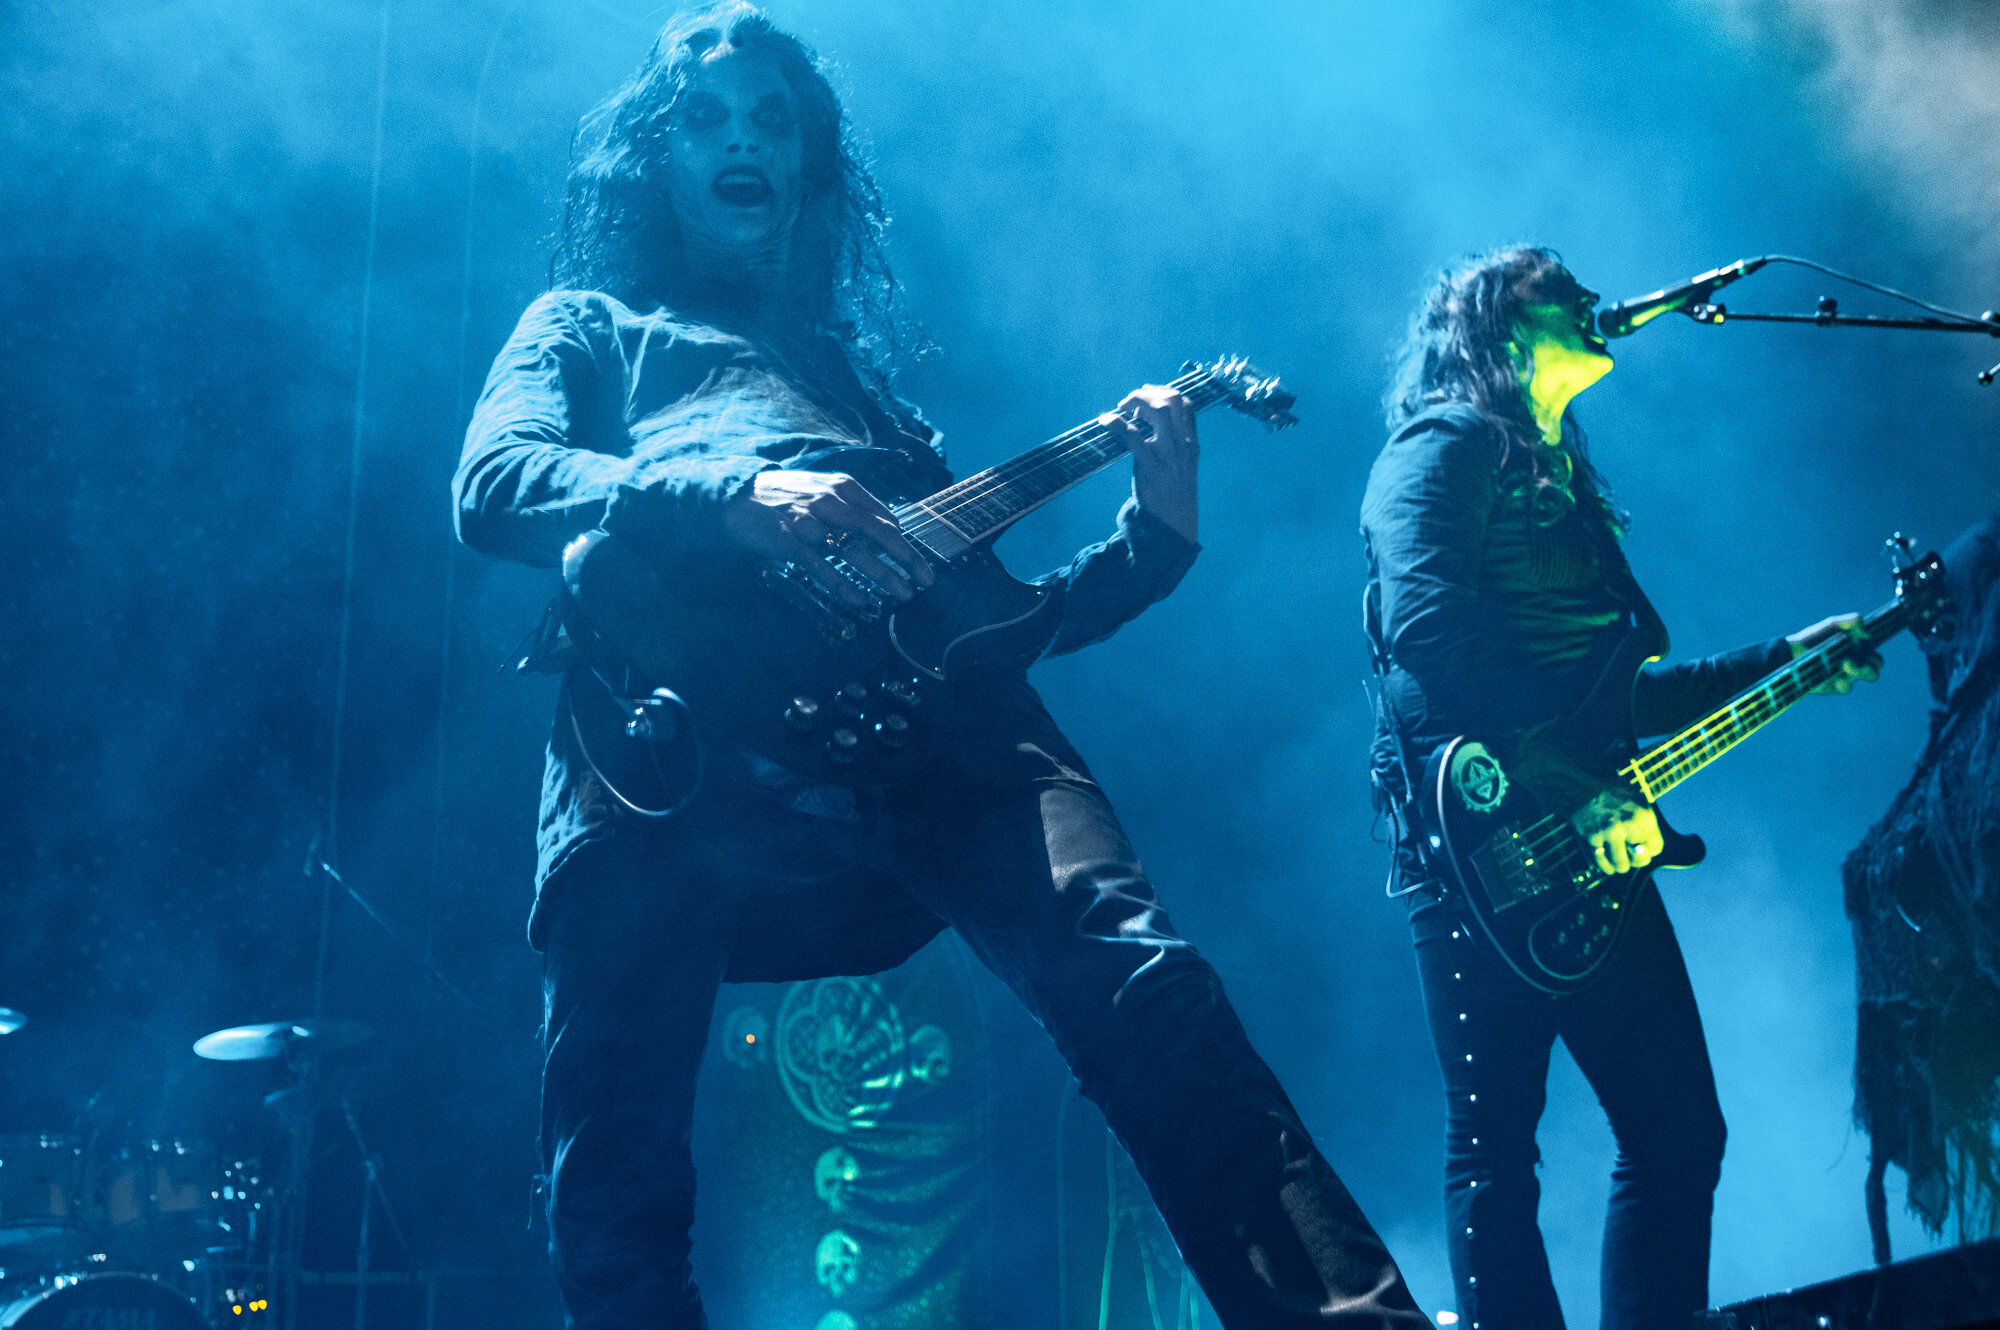 Tribulation Live in concert at The SSE Arena, Wembley, November 2019